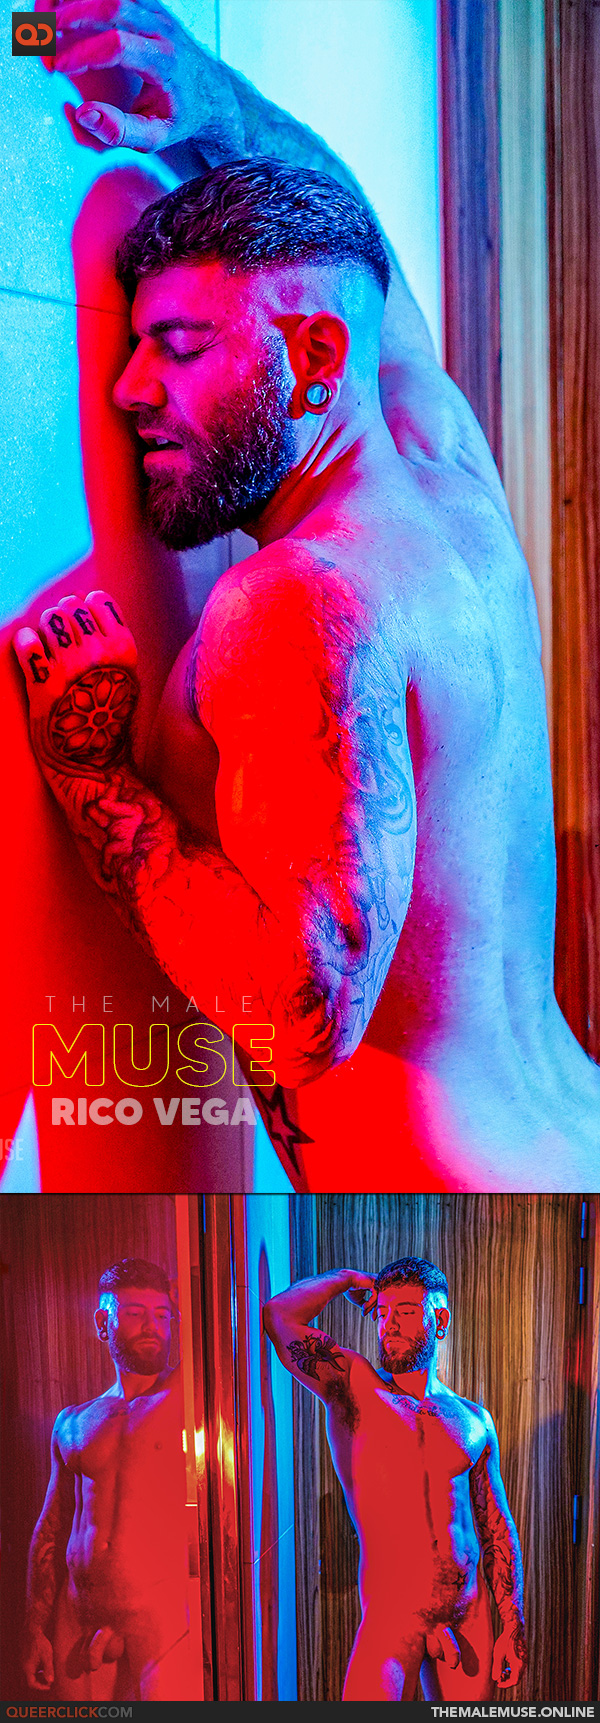 The Male Muse: Rico Vega - Illuminated